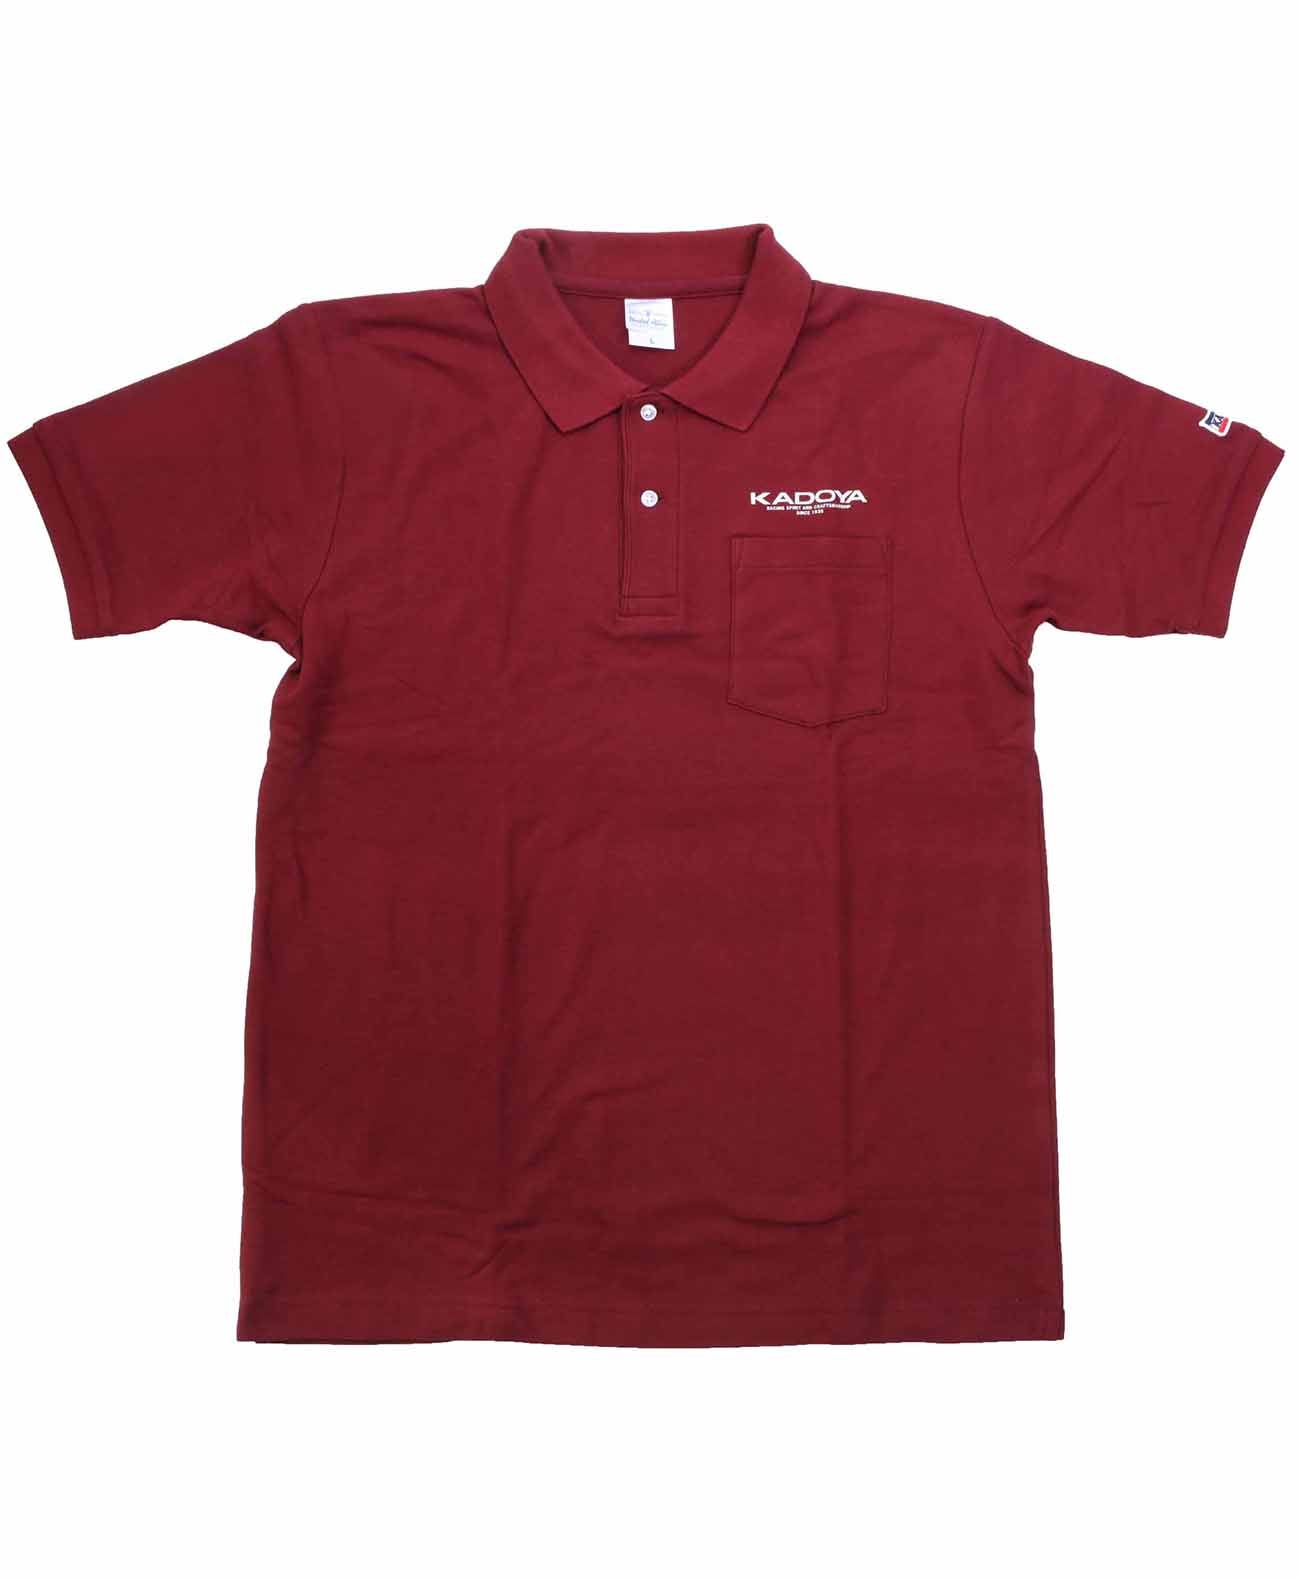 Kadoya Polo Shirt / Red